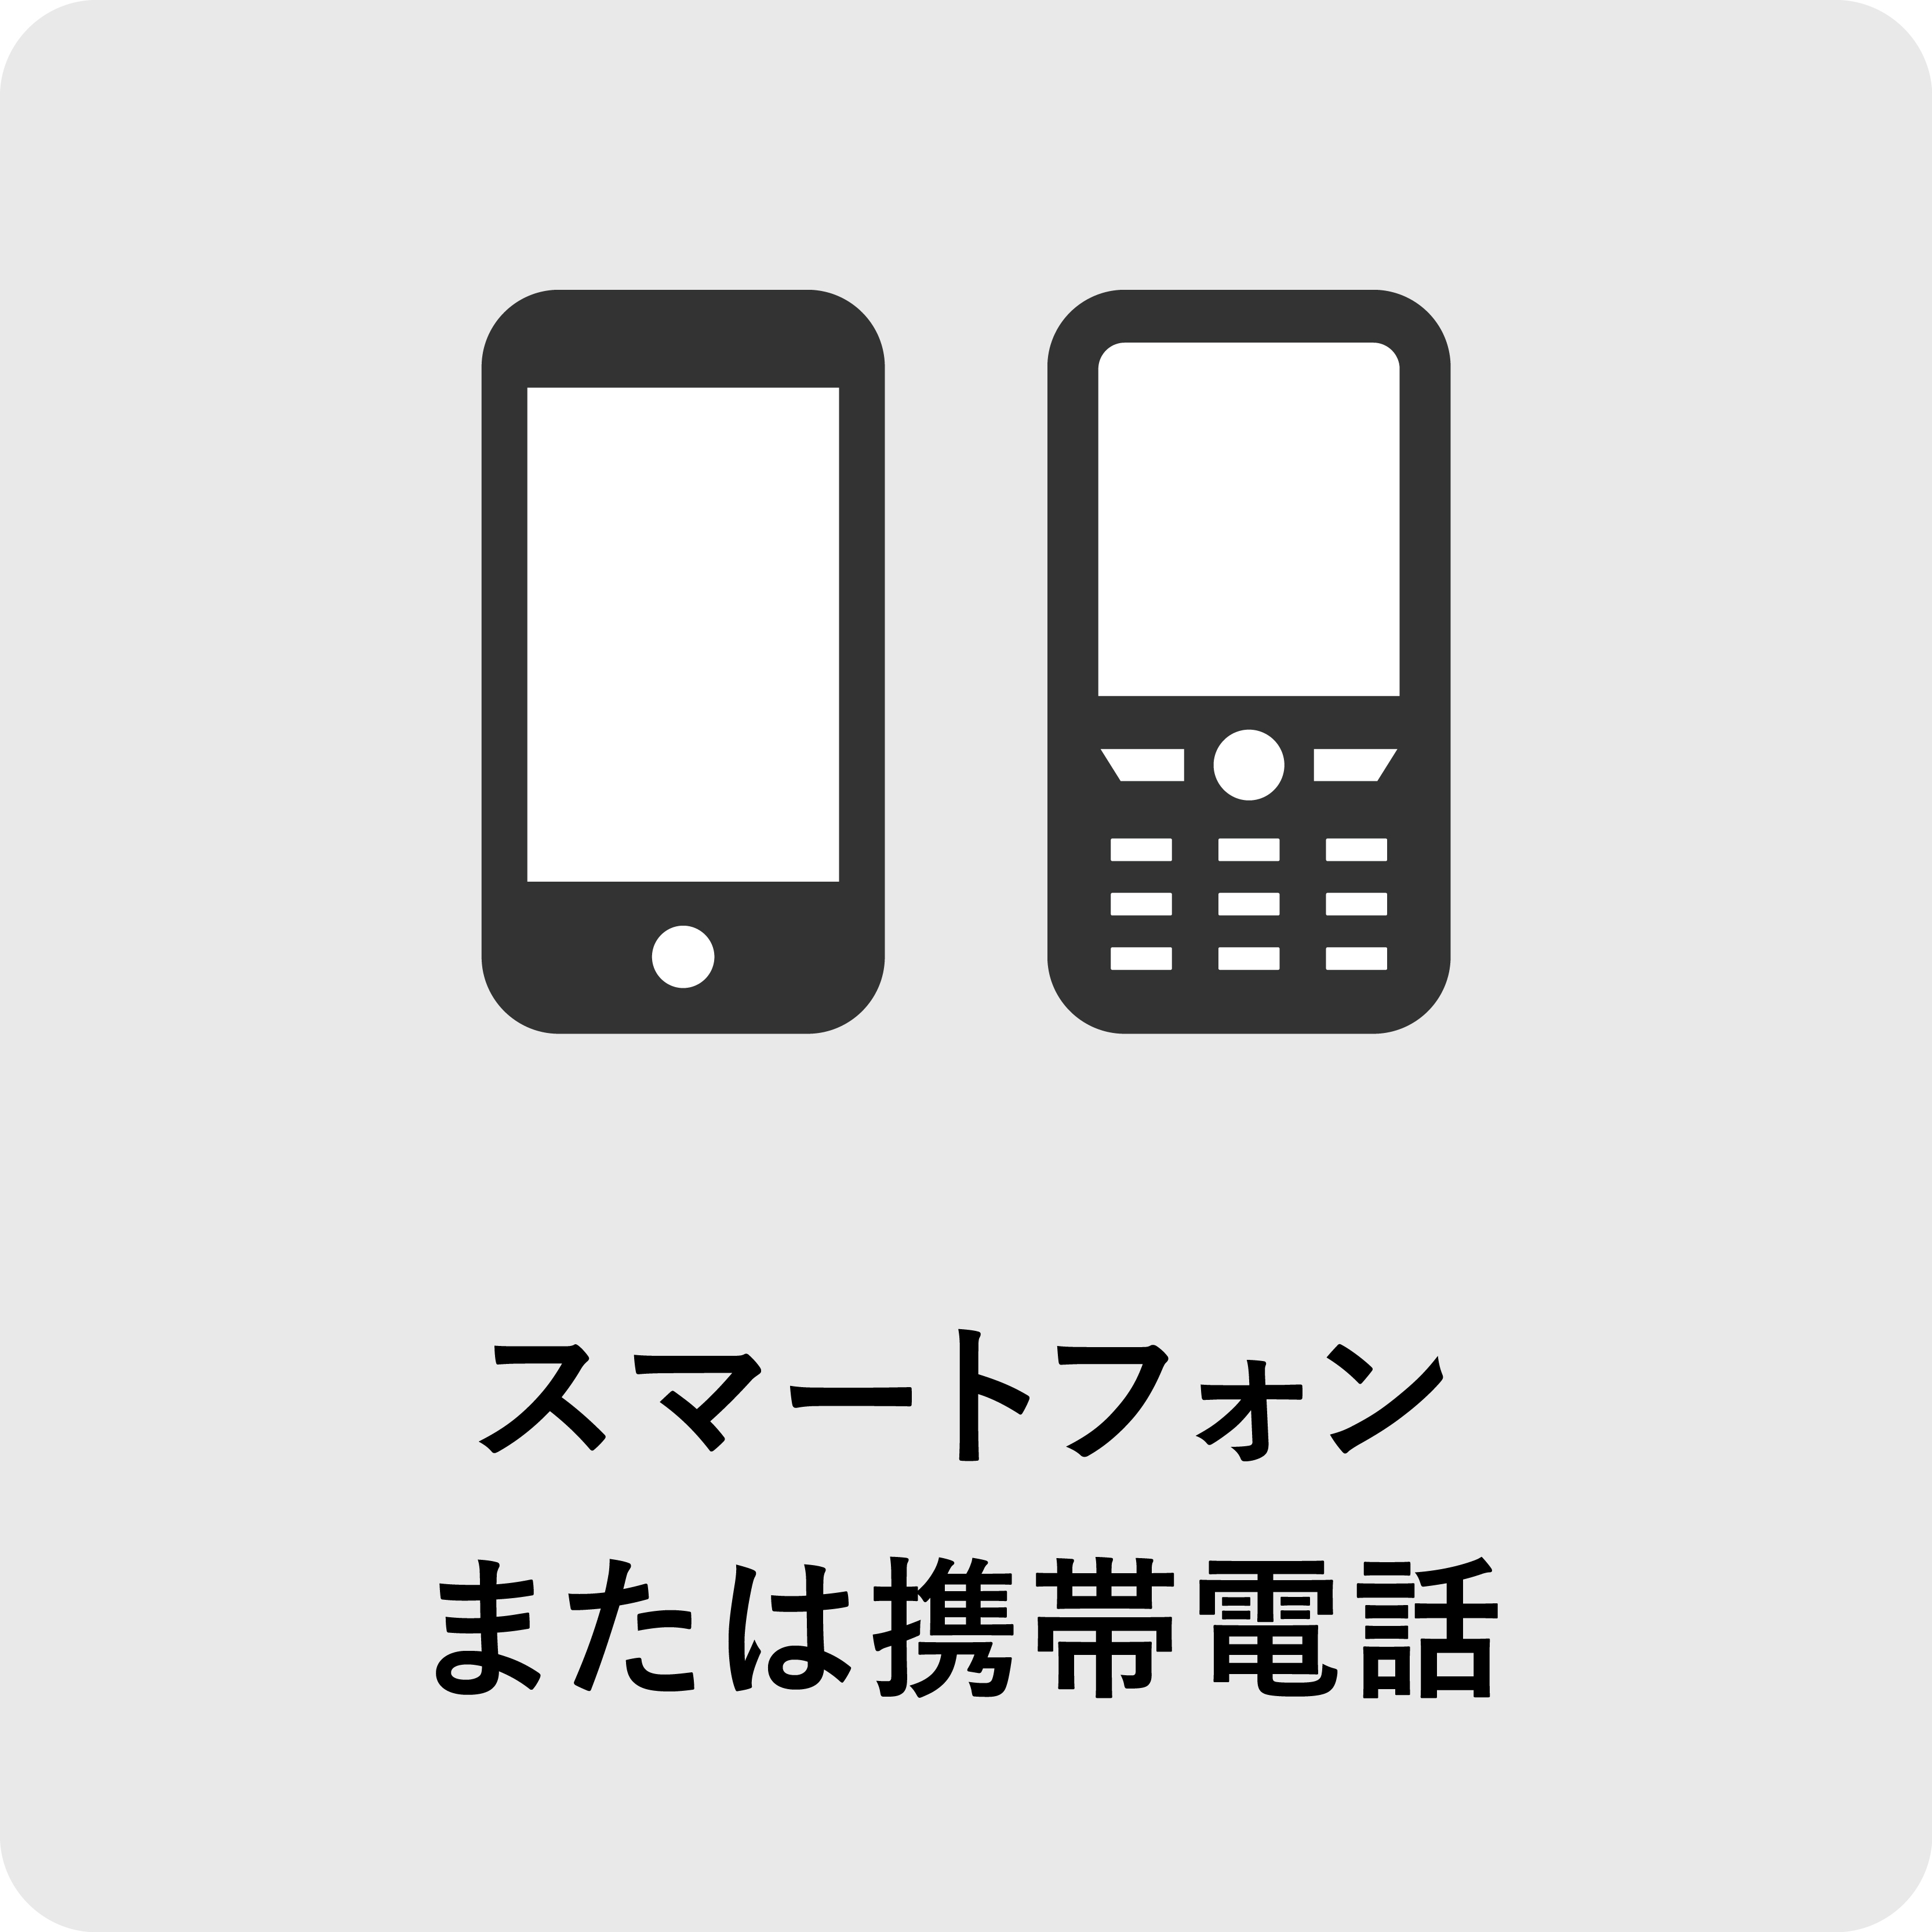 スマートフォン、または携帯電話